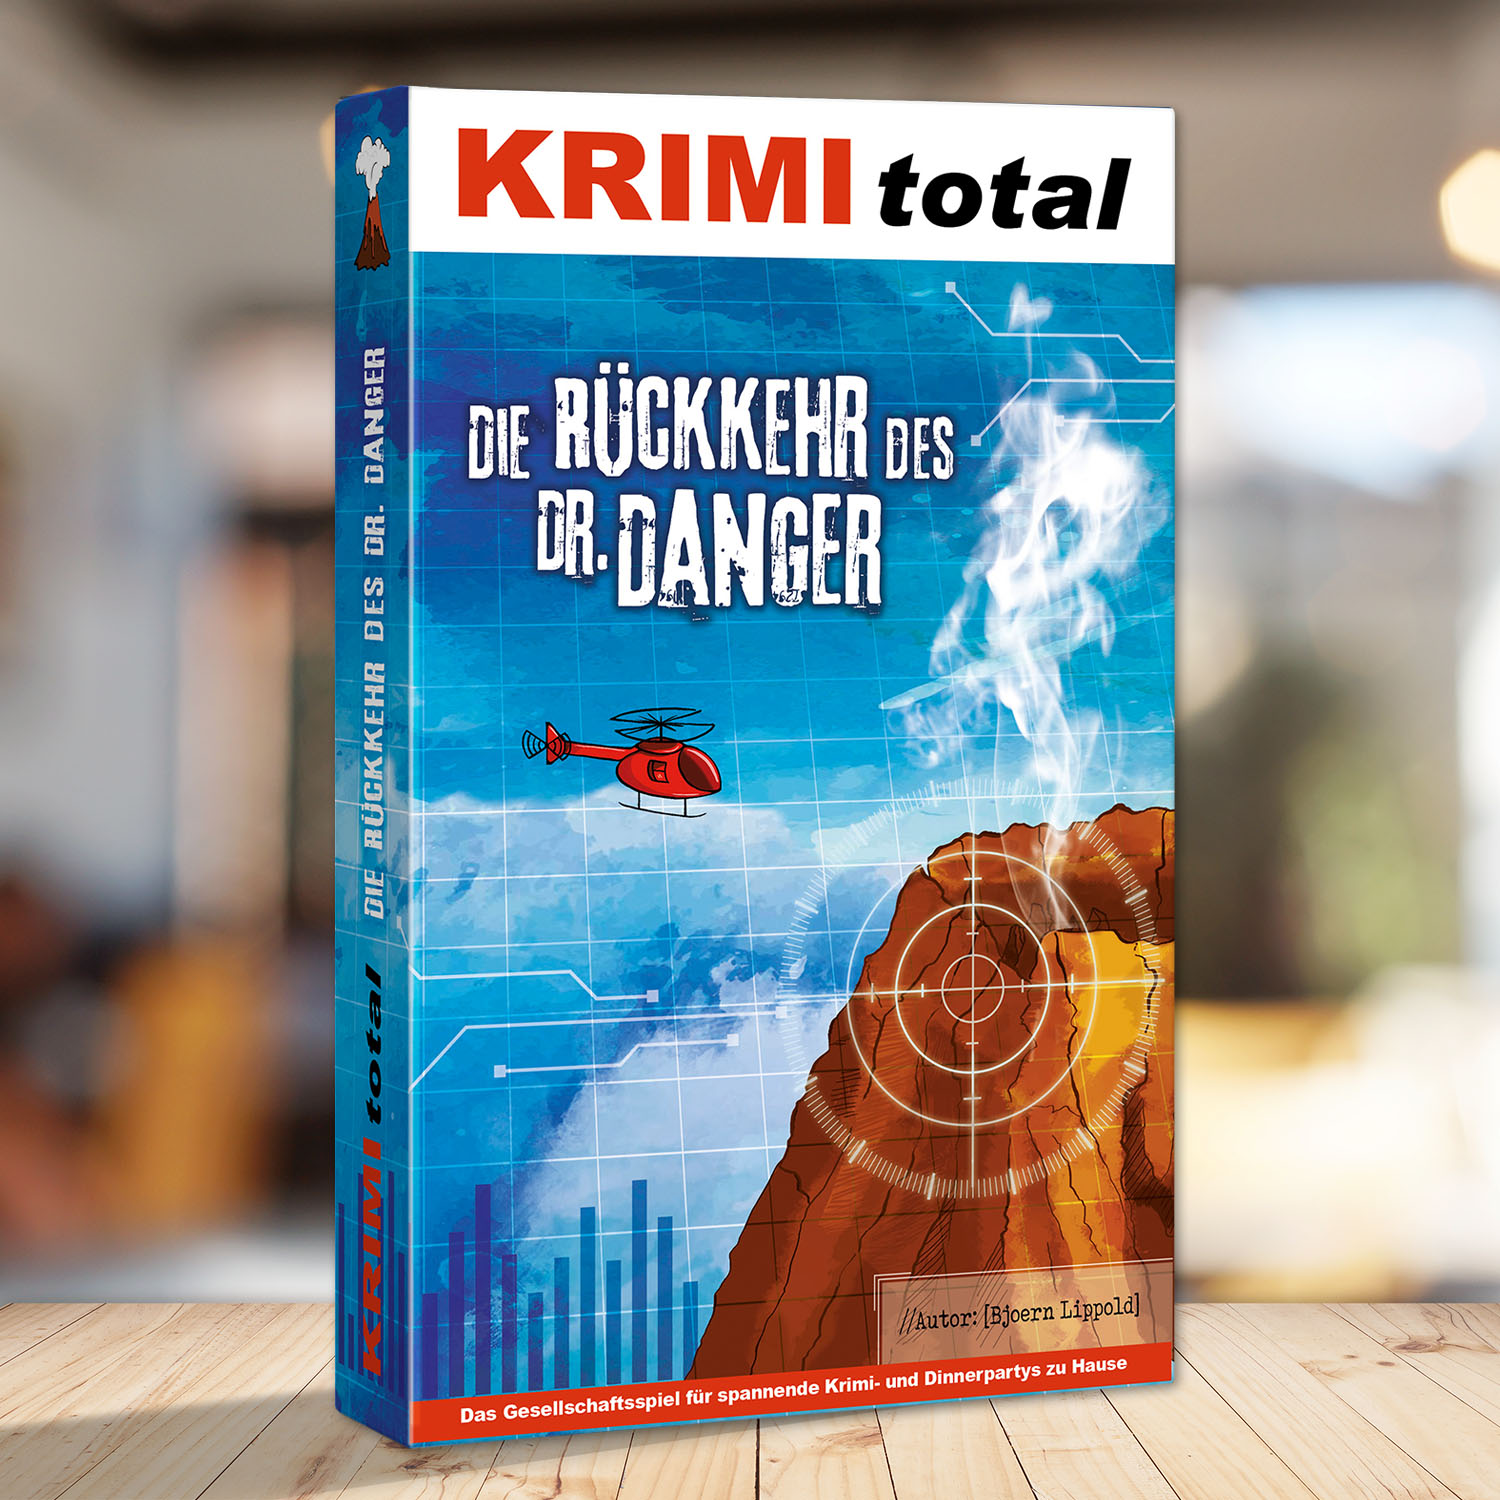 Abbildung eines Spielkartons des Krimidinner Spiels "KRIMI total - Die Rückkehr des Dr. Danger"